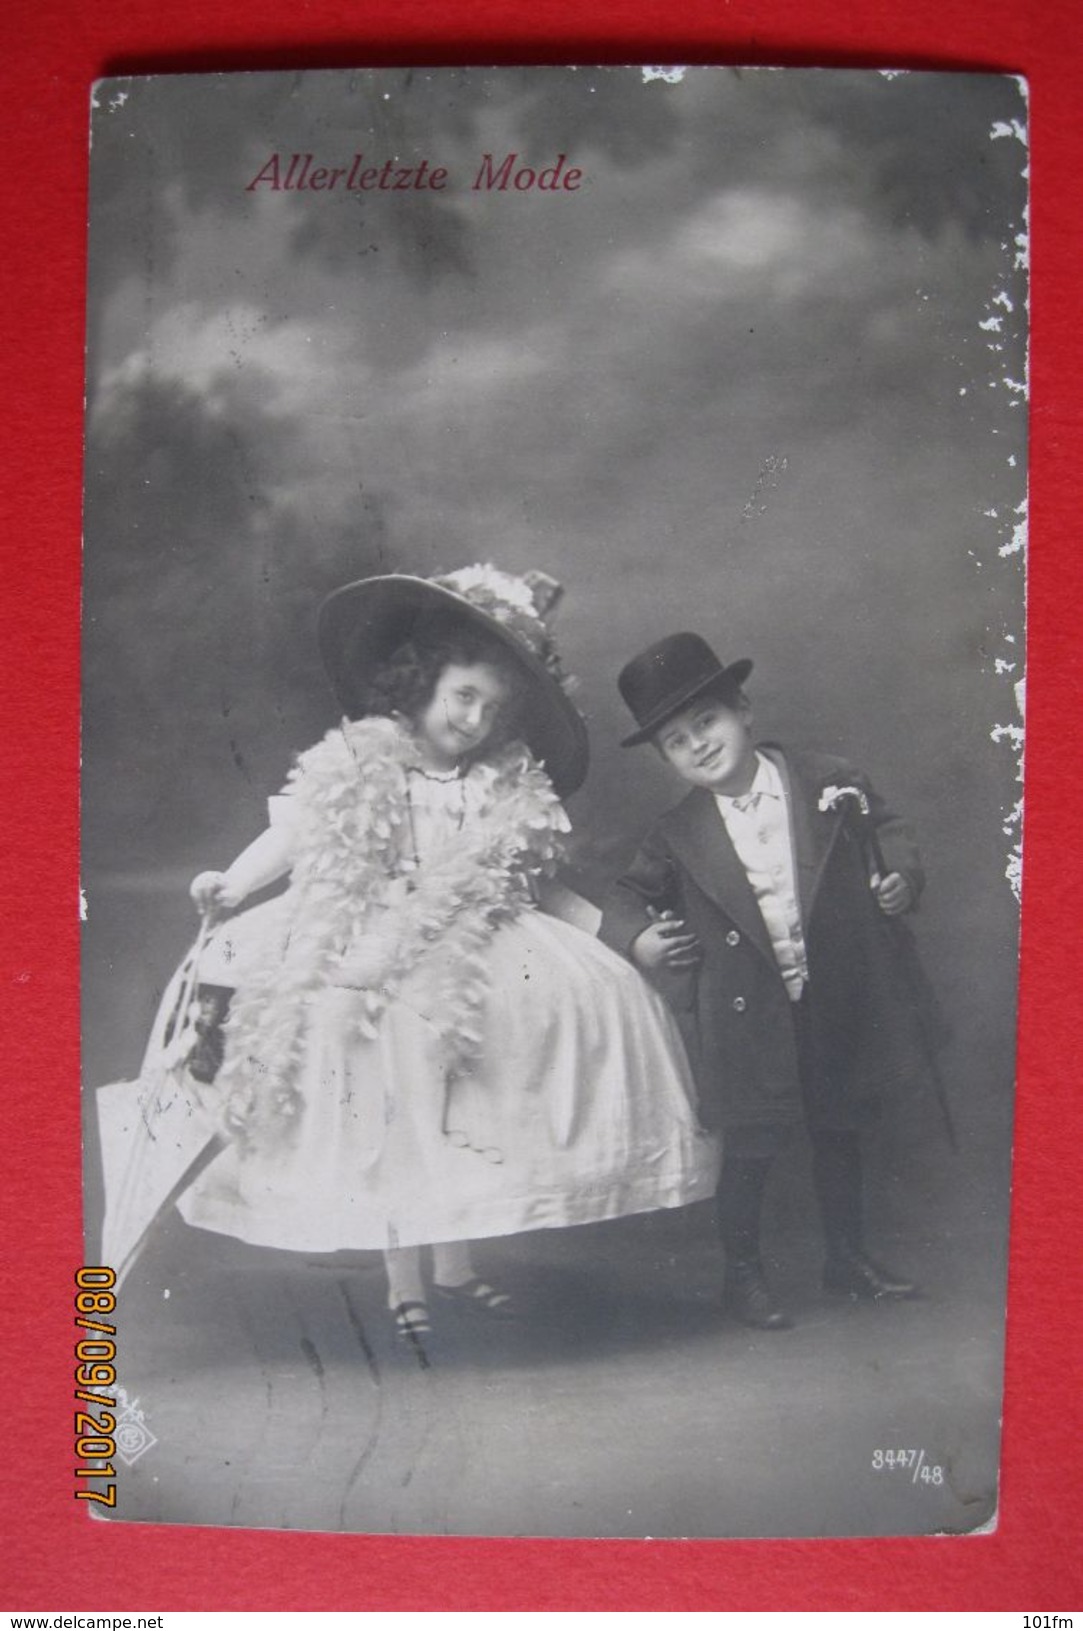 Kinder Allerletzte Mode - Kids Very Last Fashion 1912 - Photographs